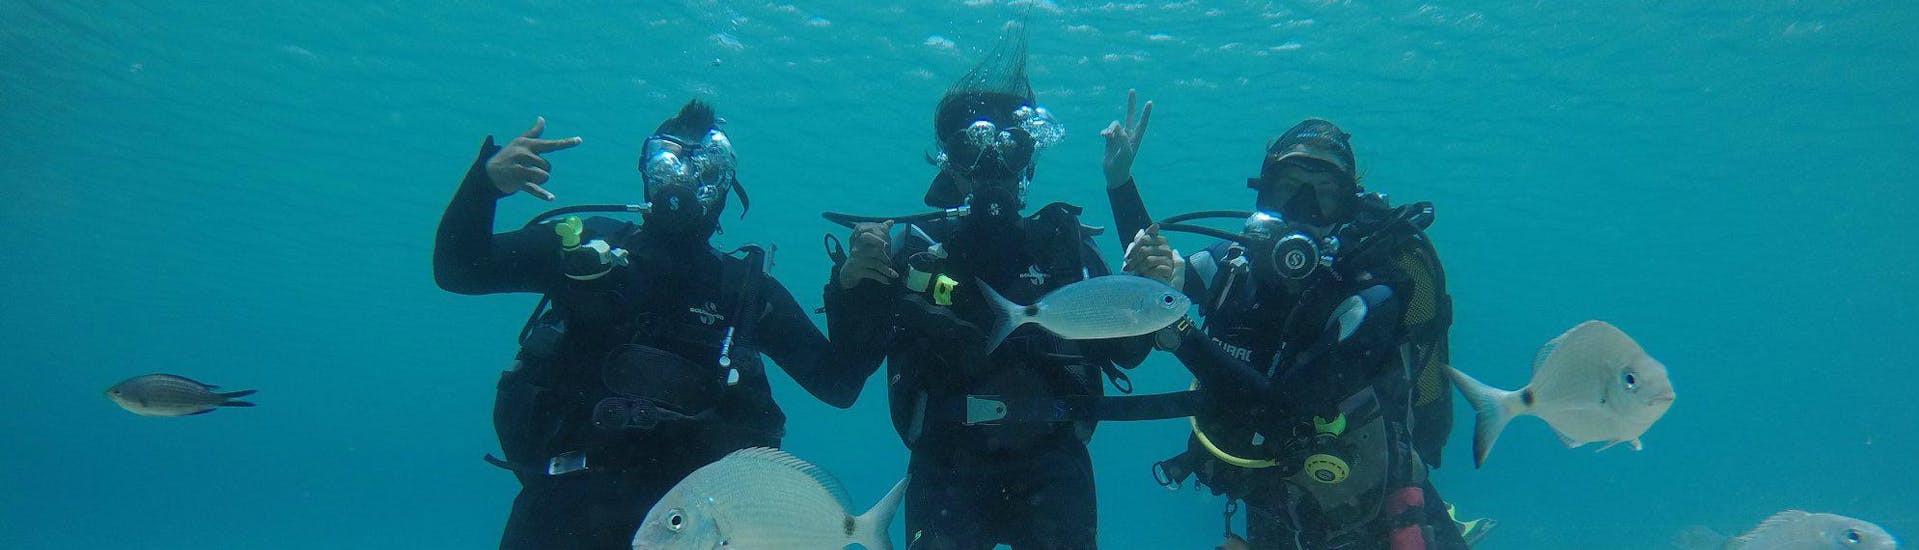 Drei Taucher erkunden die faszinierende Unterwasserwelt des Ägäischen Meeres in ihrem Tauchkurs für Anfänger - PADI Scuba Diver zusammen mit einem erfahrenen Tauchlehrer des Mykonos Diving Center.